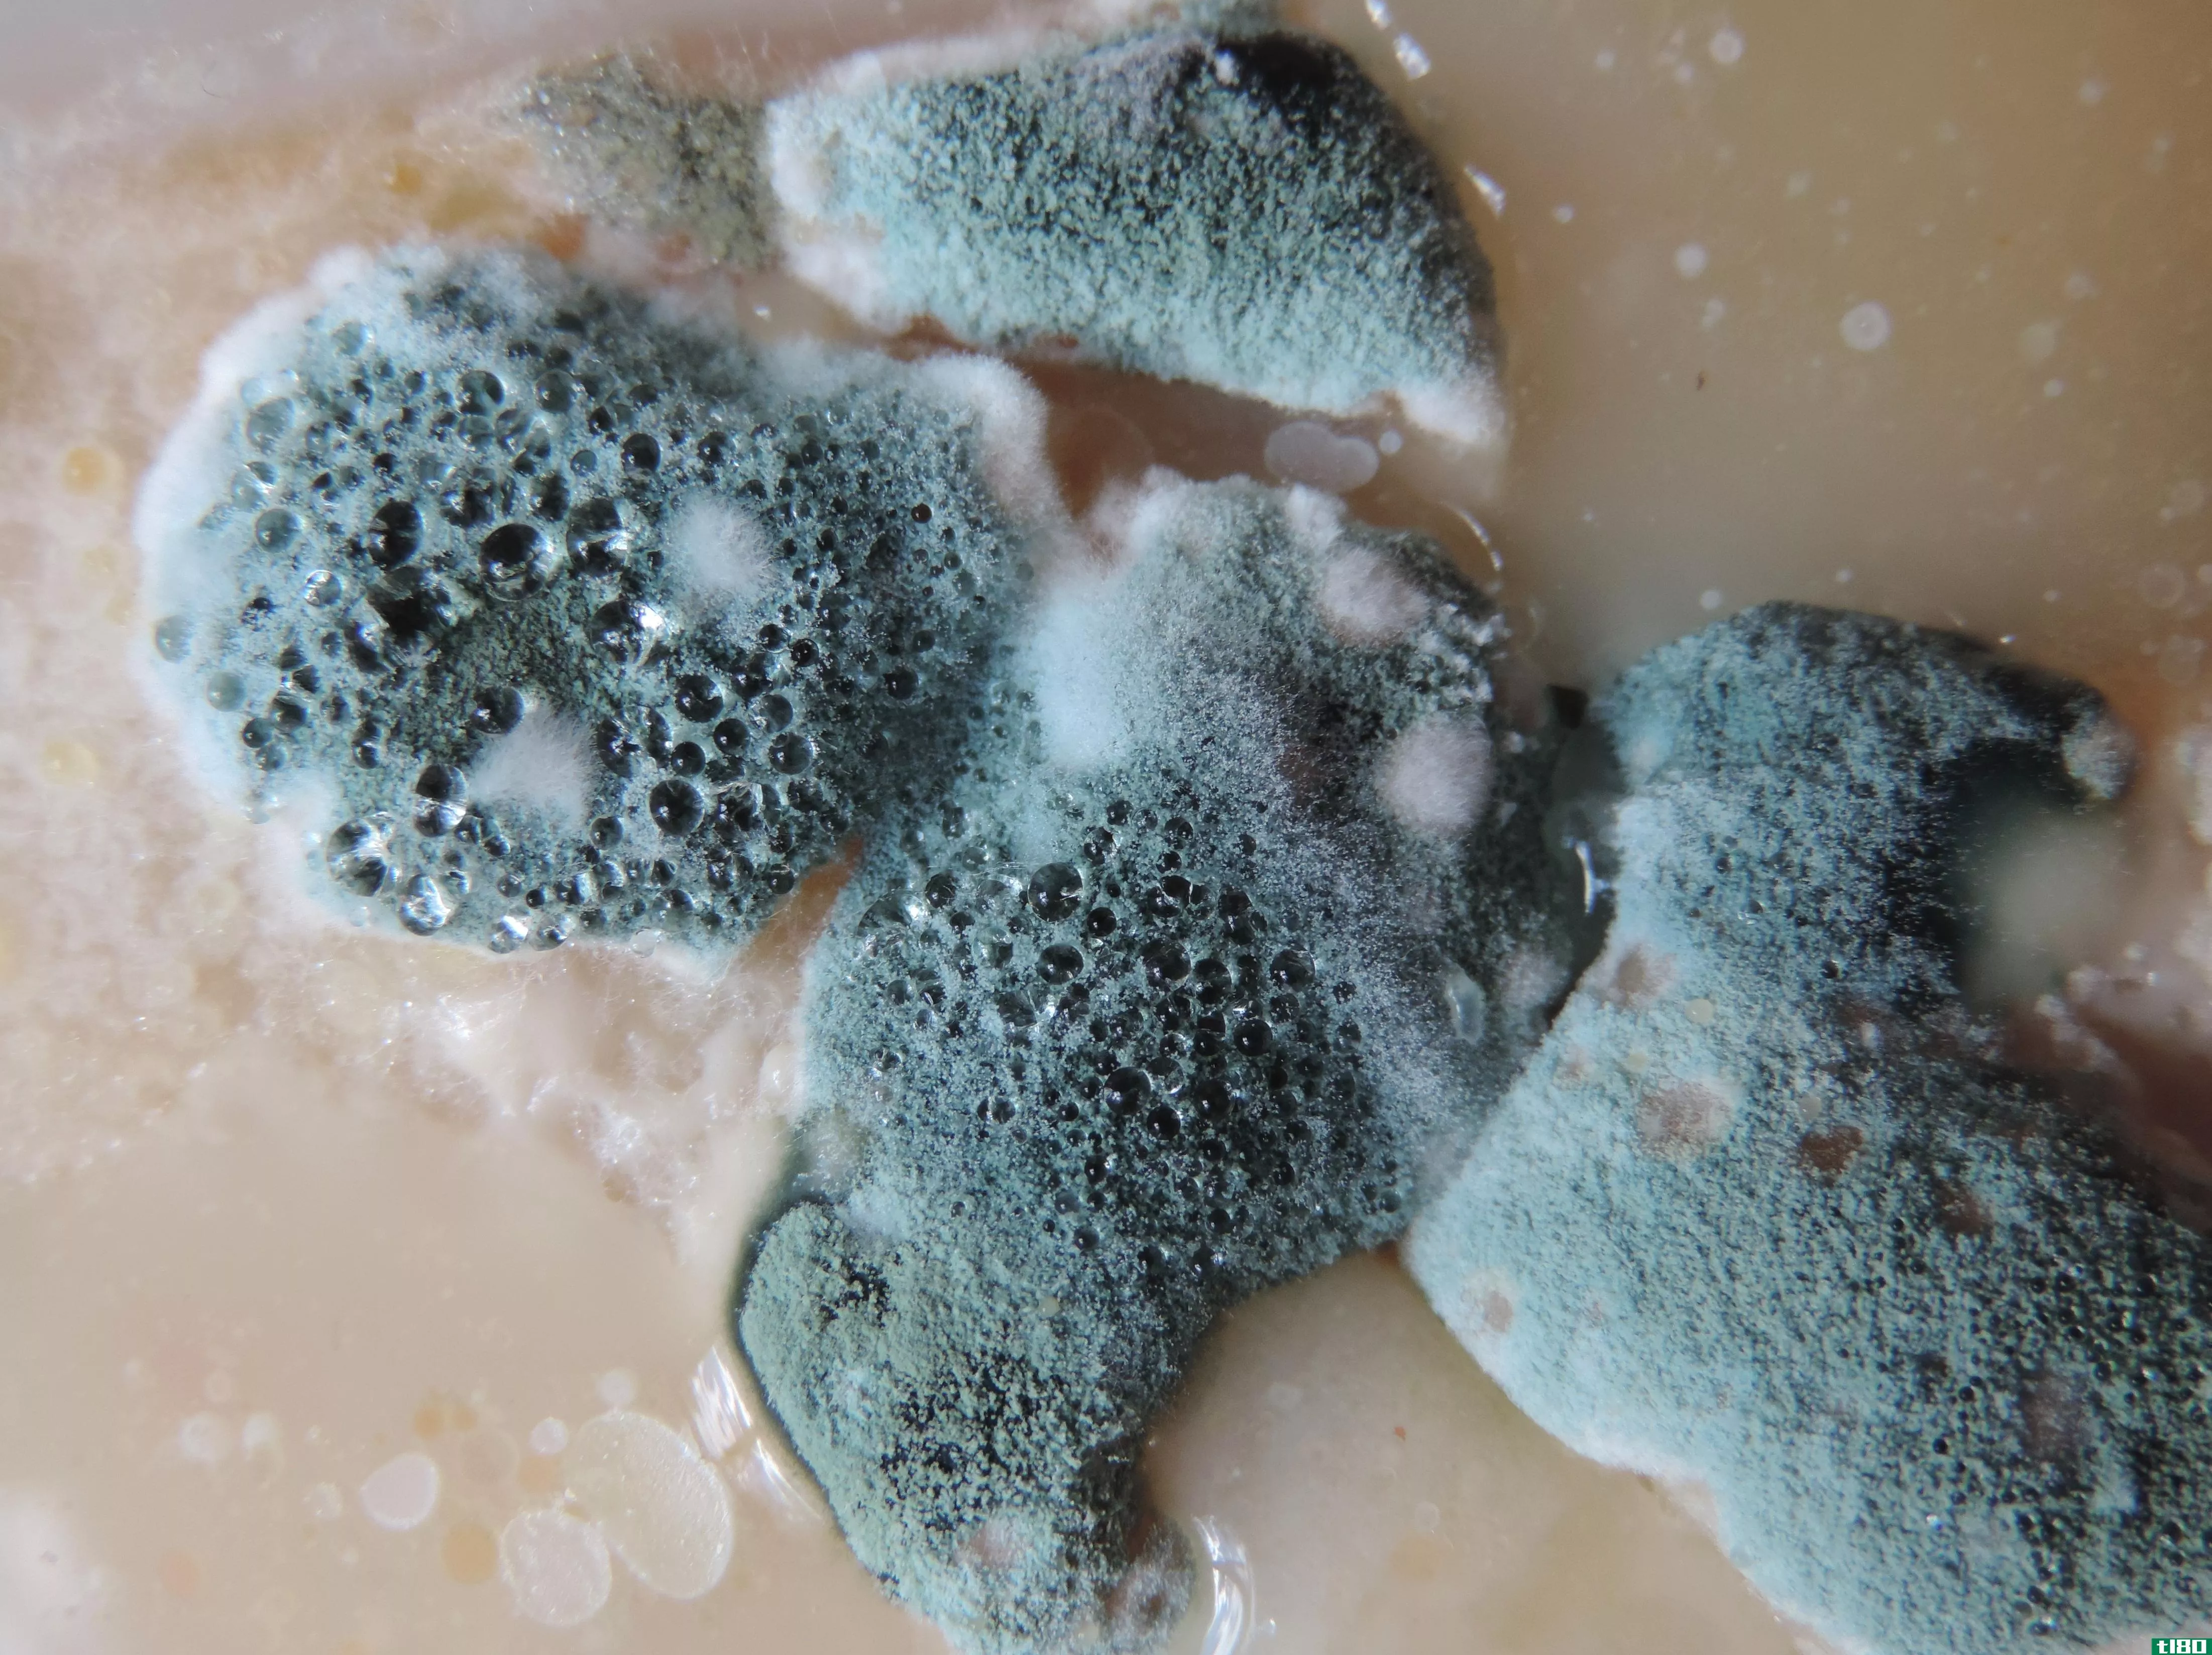 模具(mold)和真菌(fungus)的区别